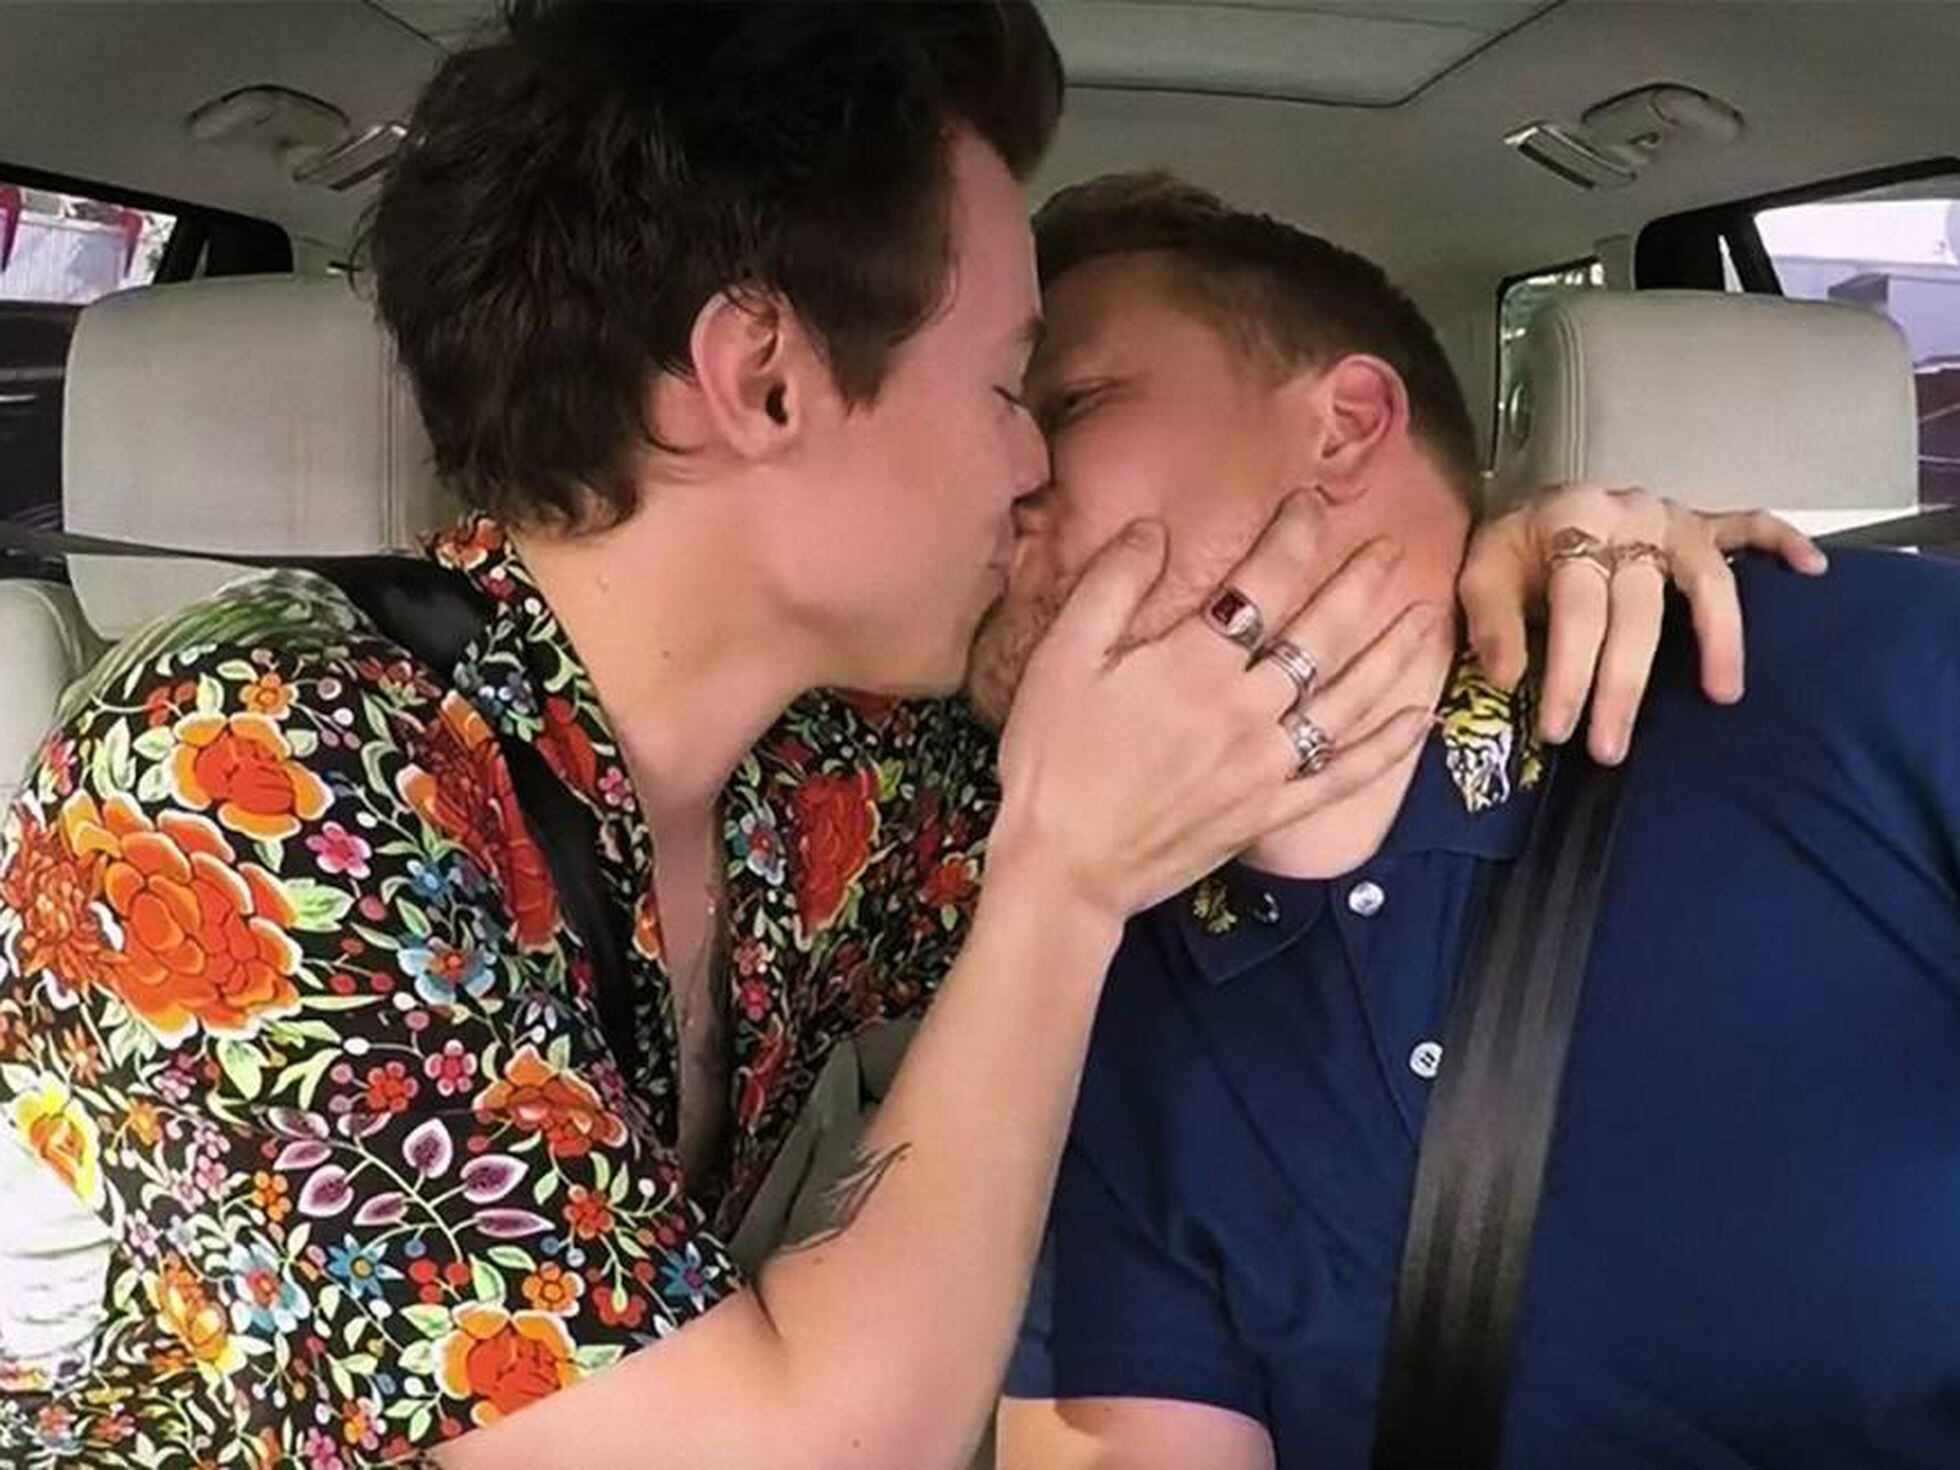 Por qué la imagen de dos hombres heterosexuales besándose con fines cómicos  es ofensiva | ICON | EL PAÍS